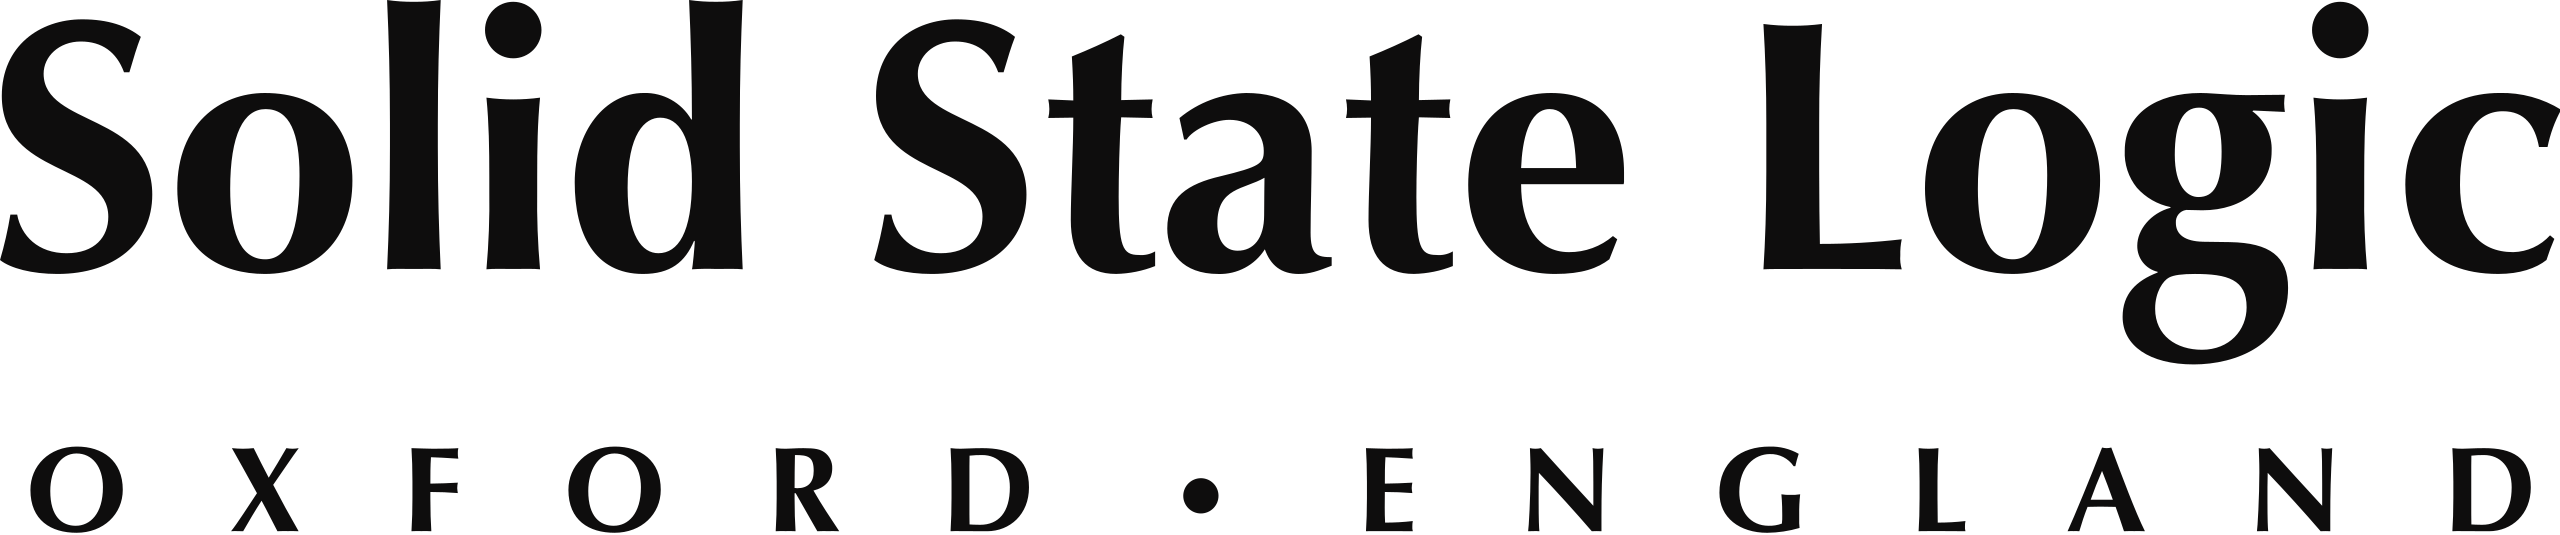 Solid_State_Logic_logo.svg